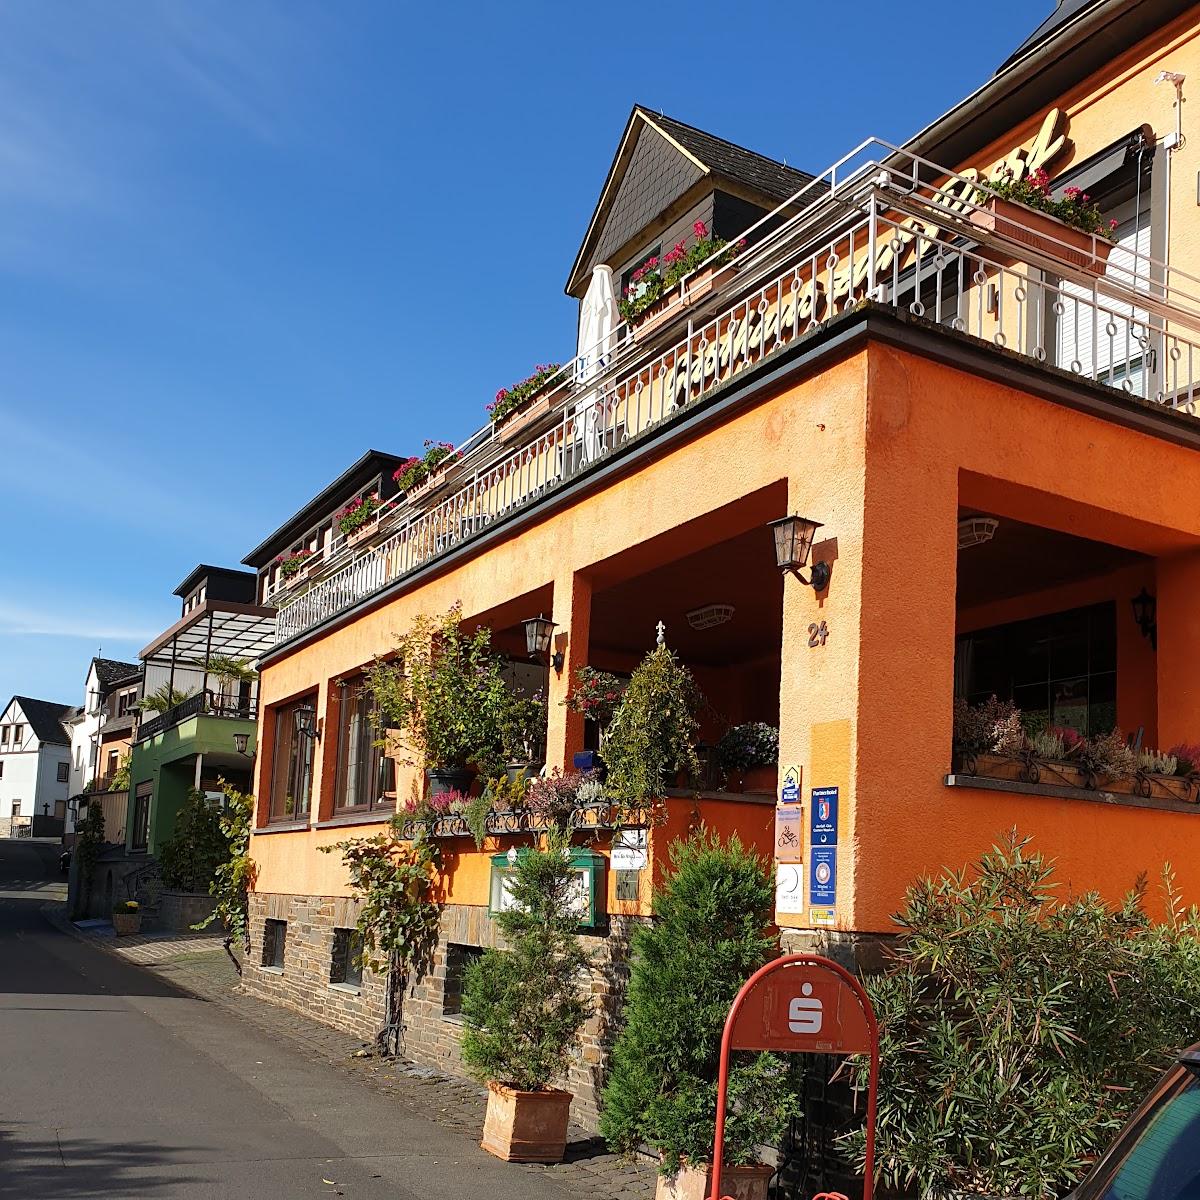 Restaurant "Hotel, Gasthaus und Restaurant zur Post" in Klotten